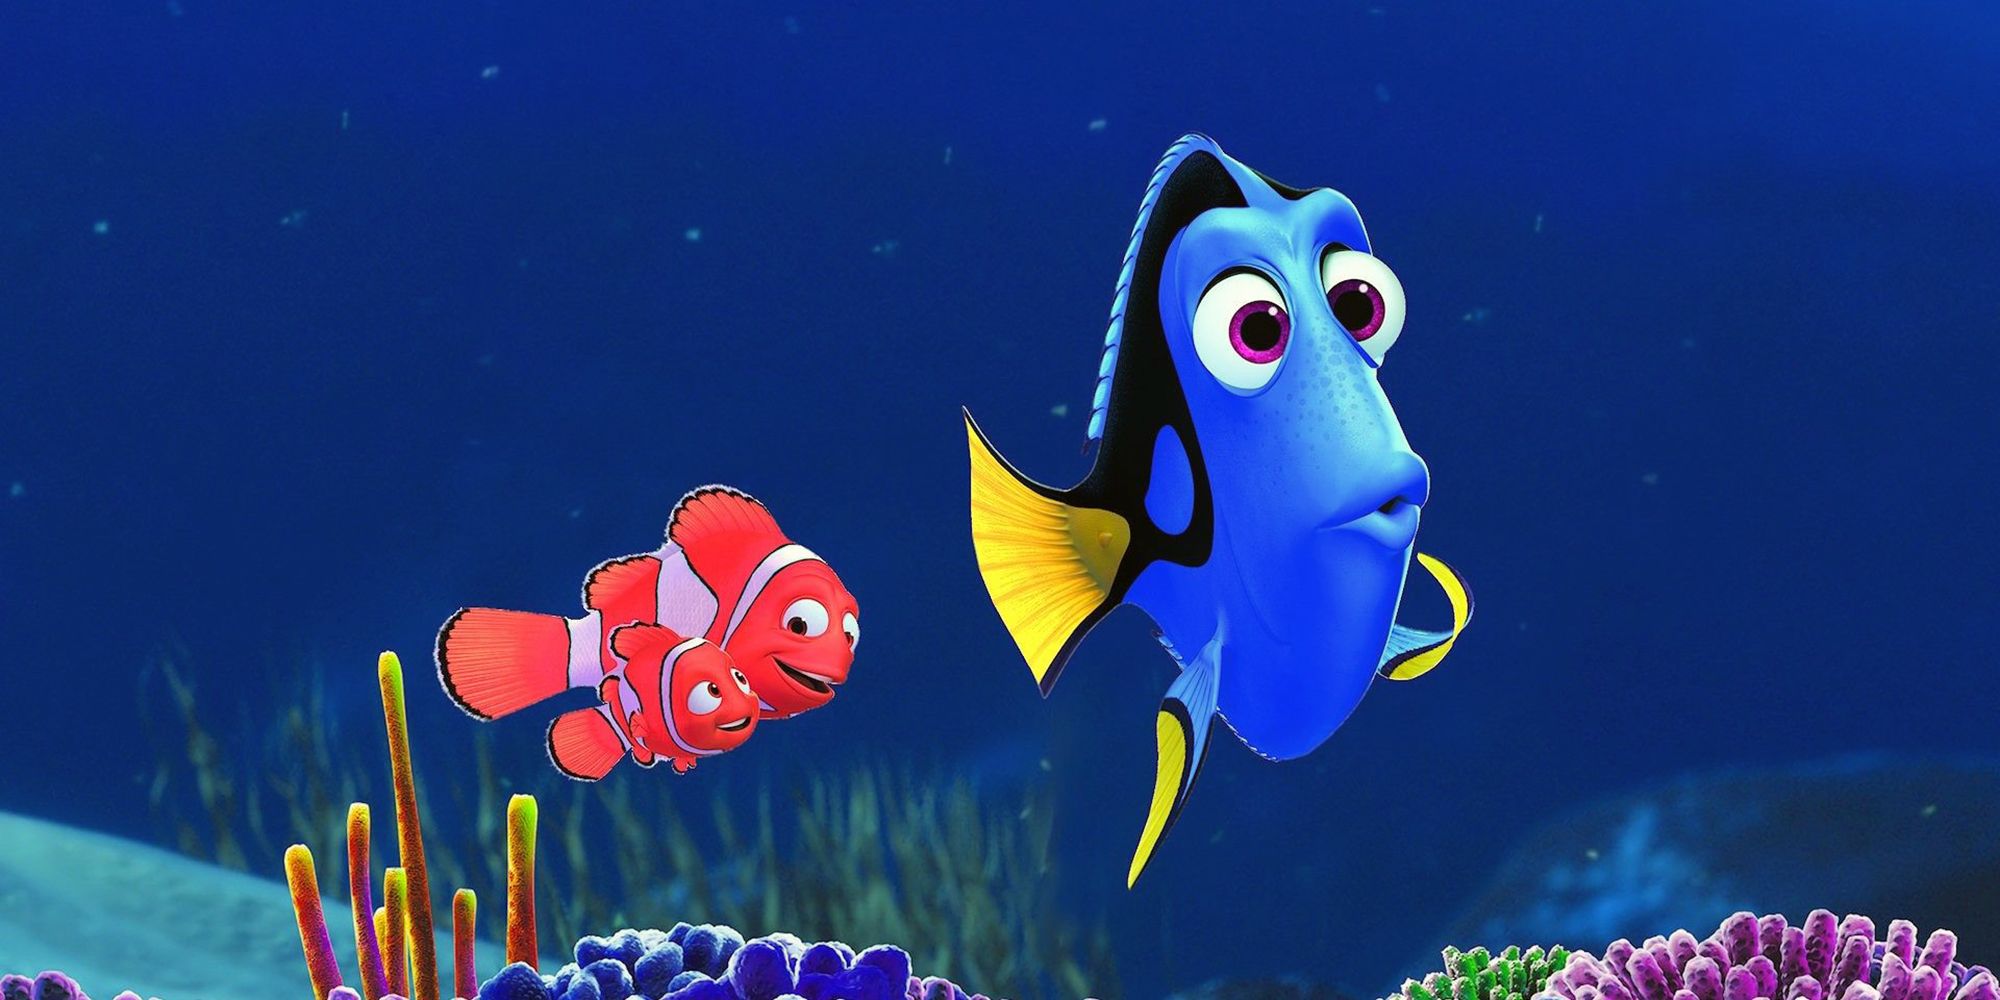 ใน 'Finding Nemo' ดอรี่ (เอลเลน ดีเจนเนอเรส) เป็นส่วนสำคัญของเรื่องราว... และจบลงด้วยภาคต่อของเธอเอง